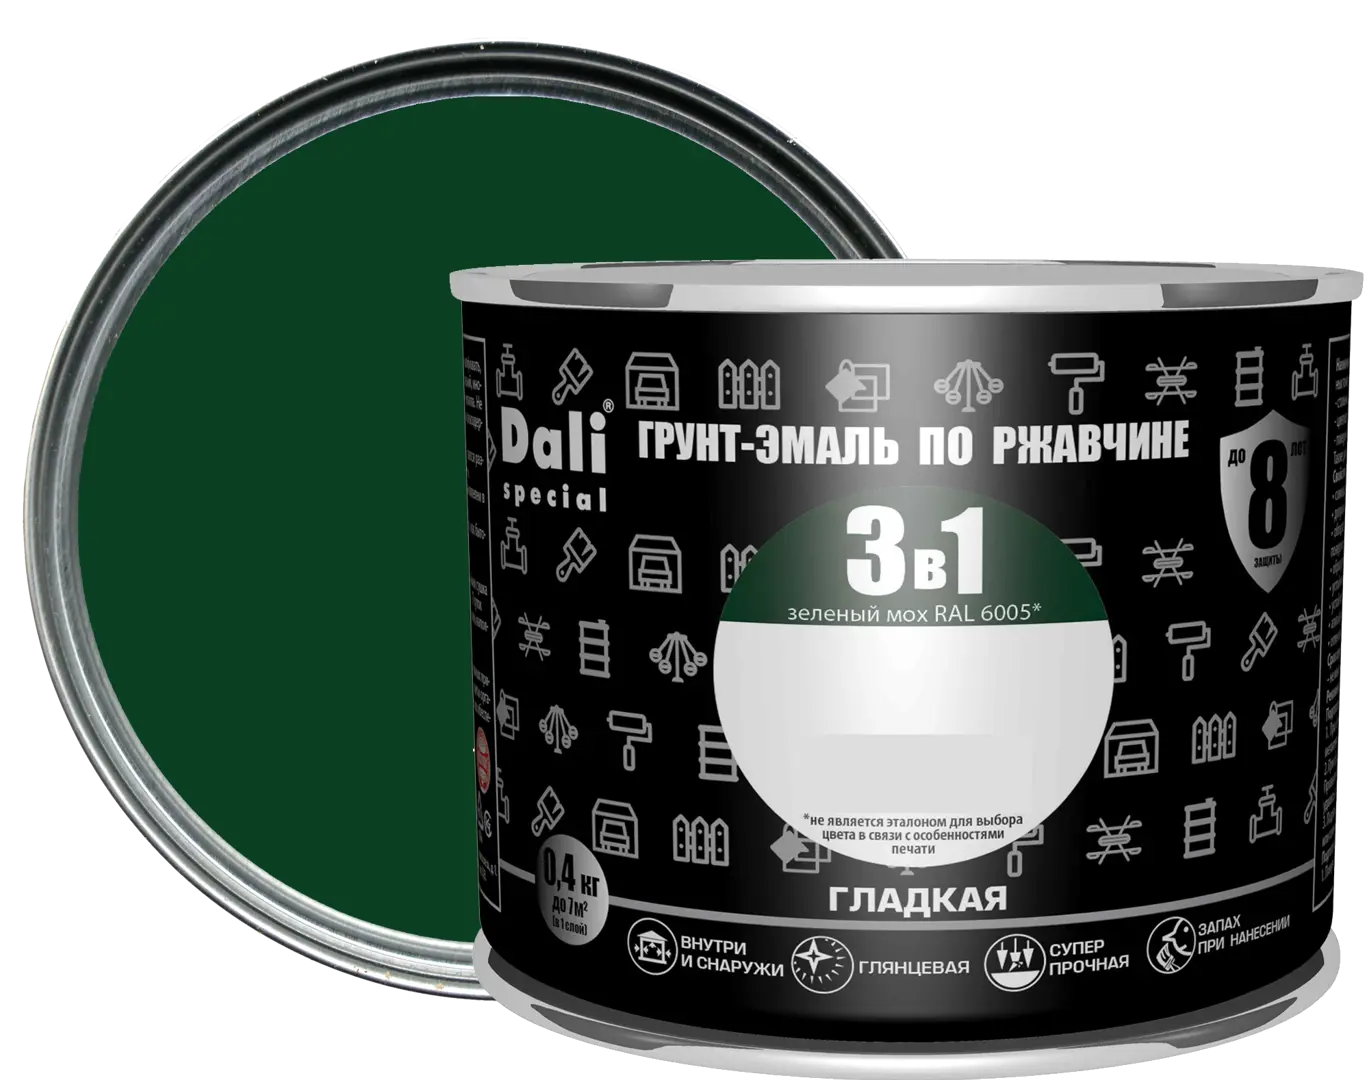 Грунт-эмаль по ржавчине 3 в 1 Dali Special гладкая цвет зелёный мох 0.4 кг RAL 6005 грунт эмаль по ржавчине 3 в 1 profilux гладкая цвет зелёный 0 9 кг